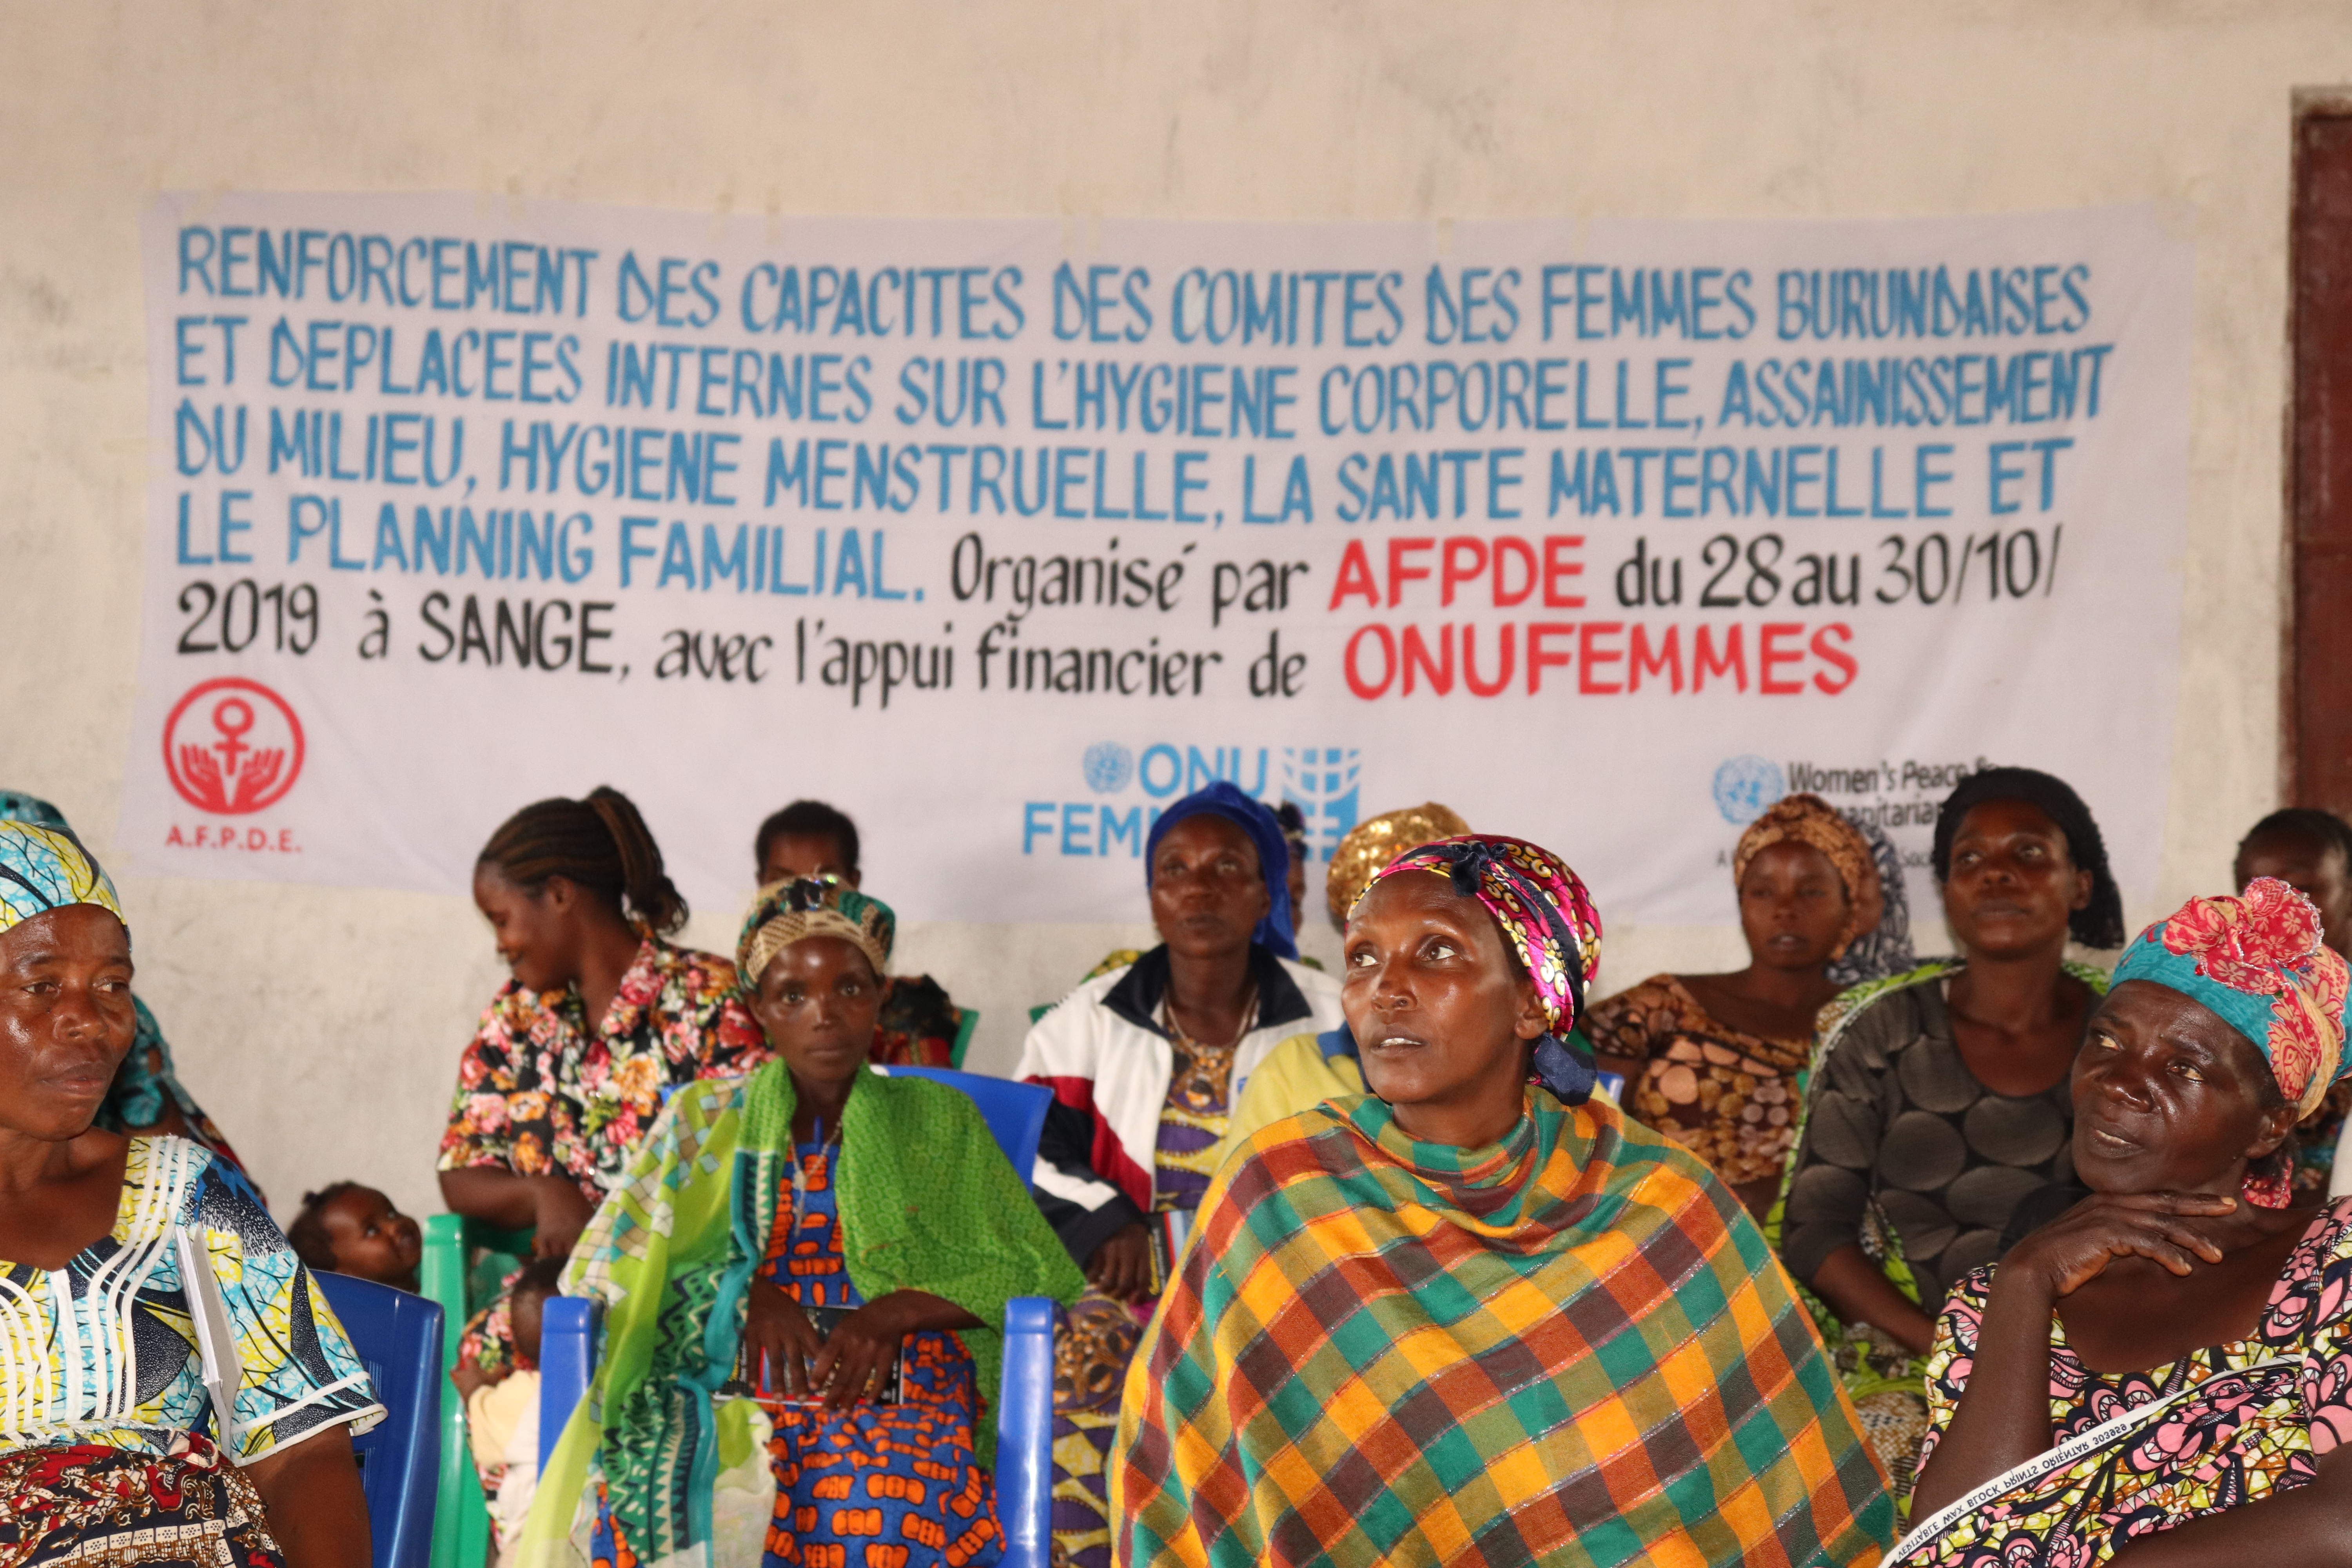 Zones de santé de Lemera et Ruzizi : 22 relais communautaires et membres des comités de femmes refugiées et déplacées renforcées en capacité par AFPDE.